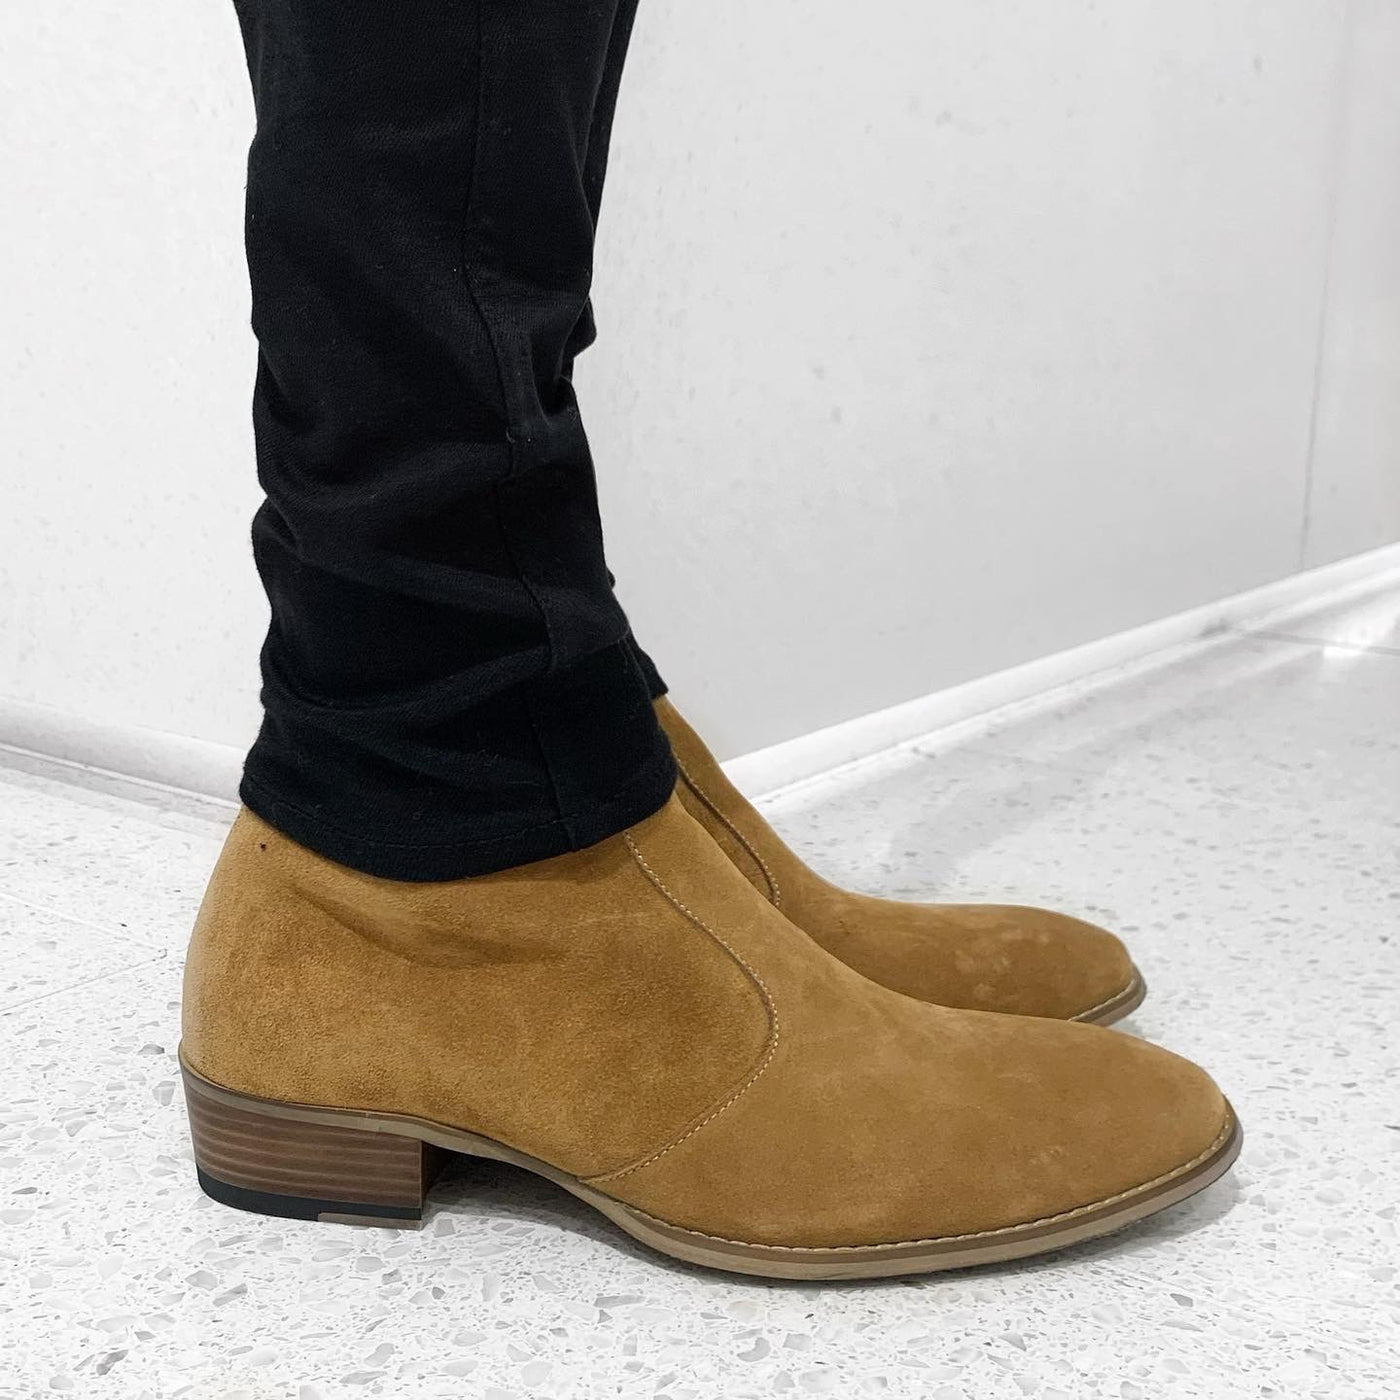 PANERO 40mm heel boots “Suede” (Brown)